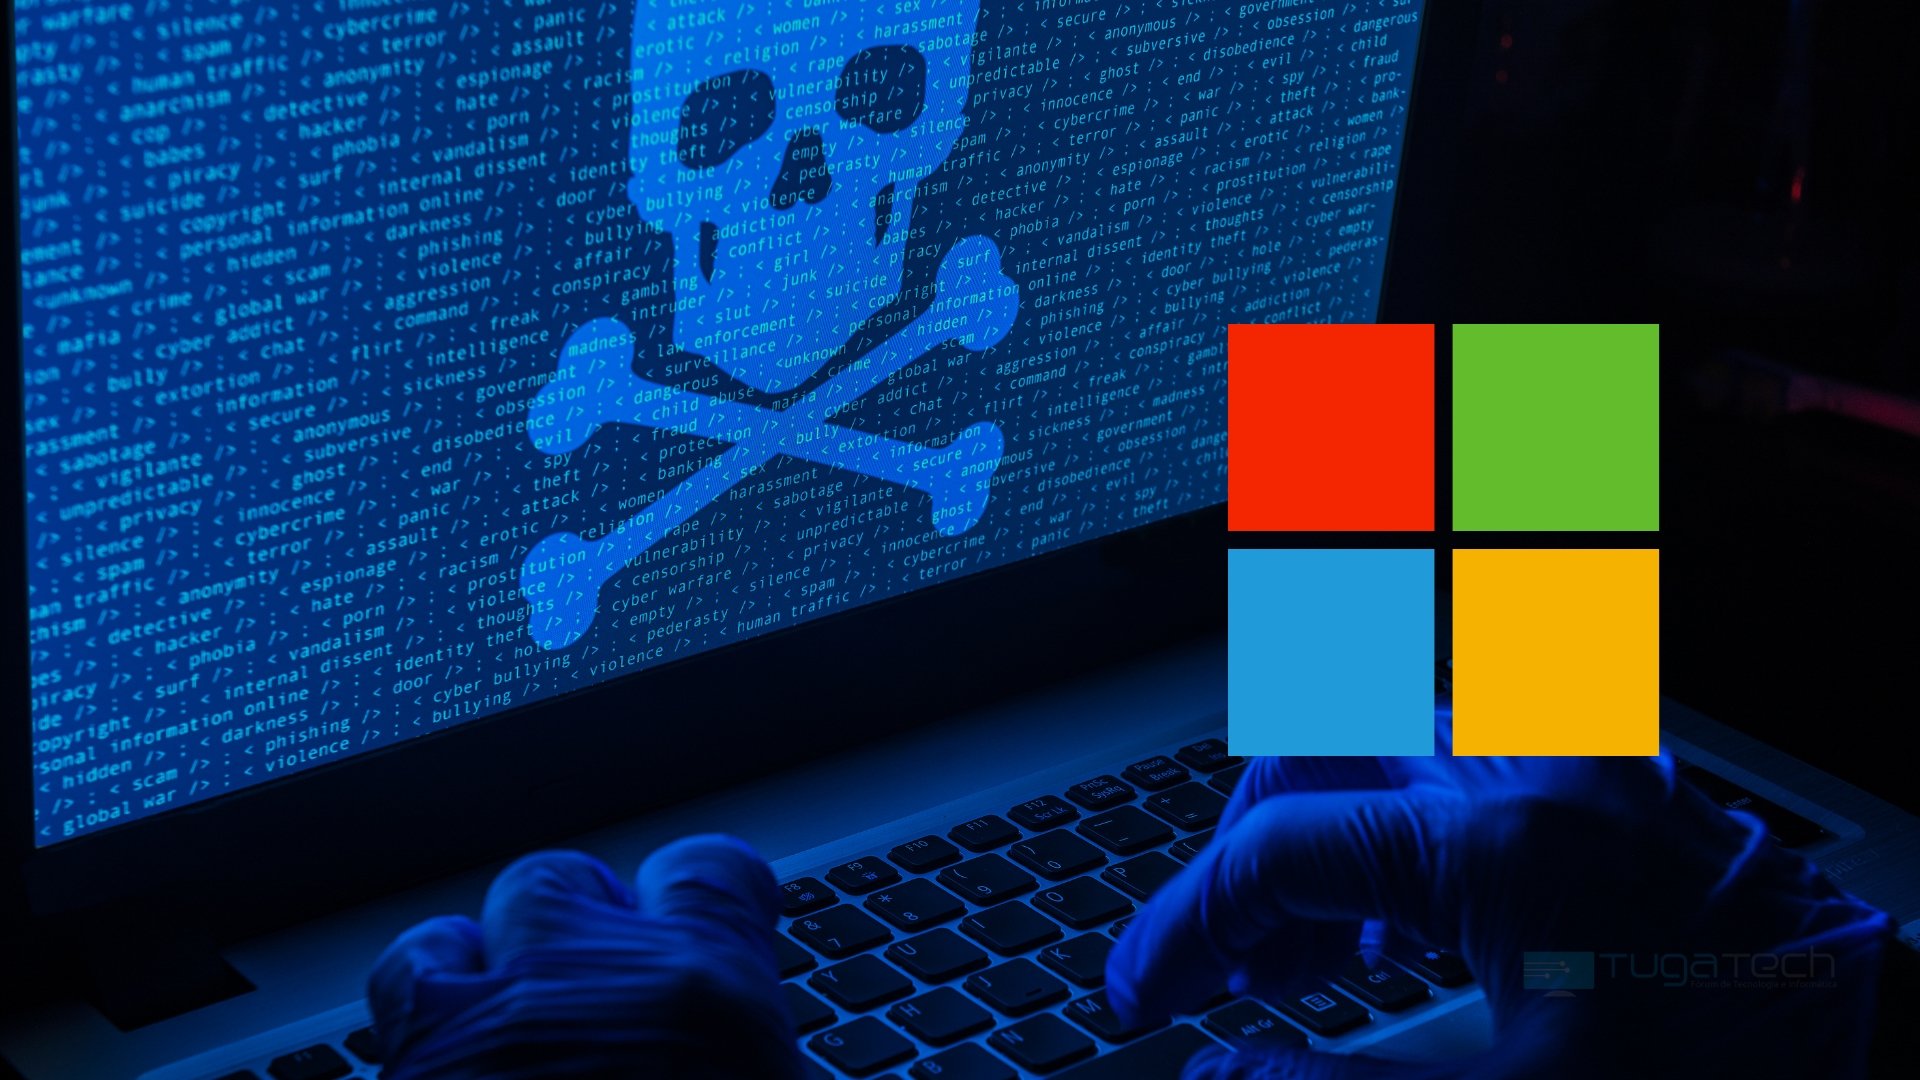 Ataque hacker com a Microsoft